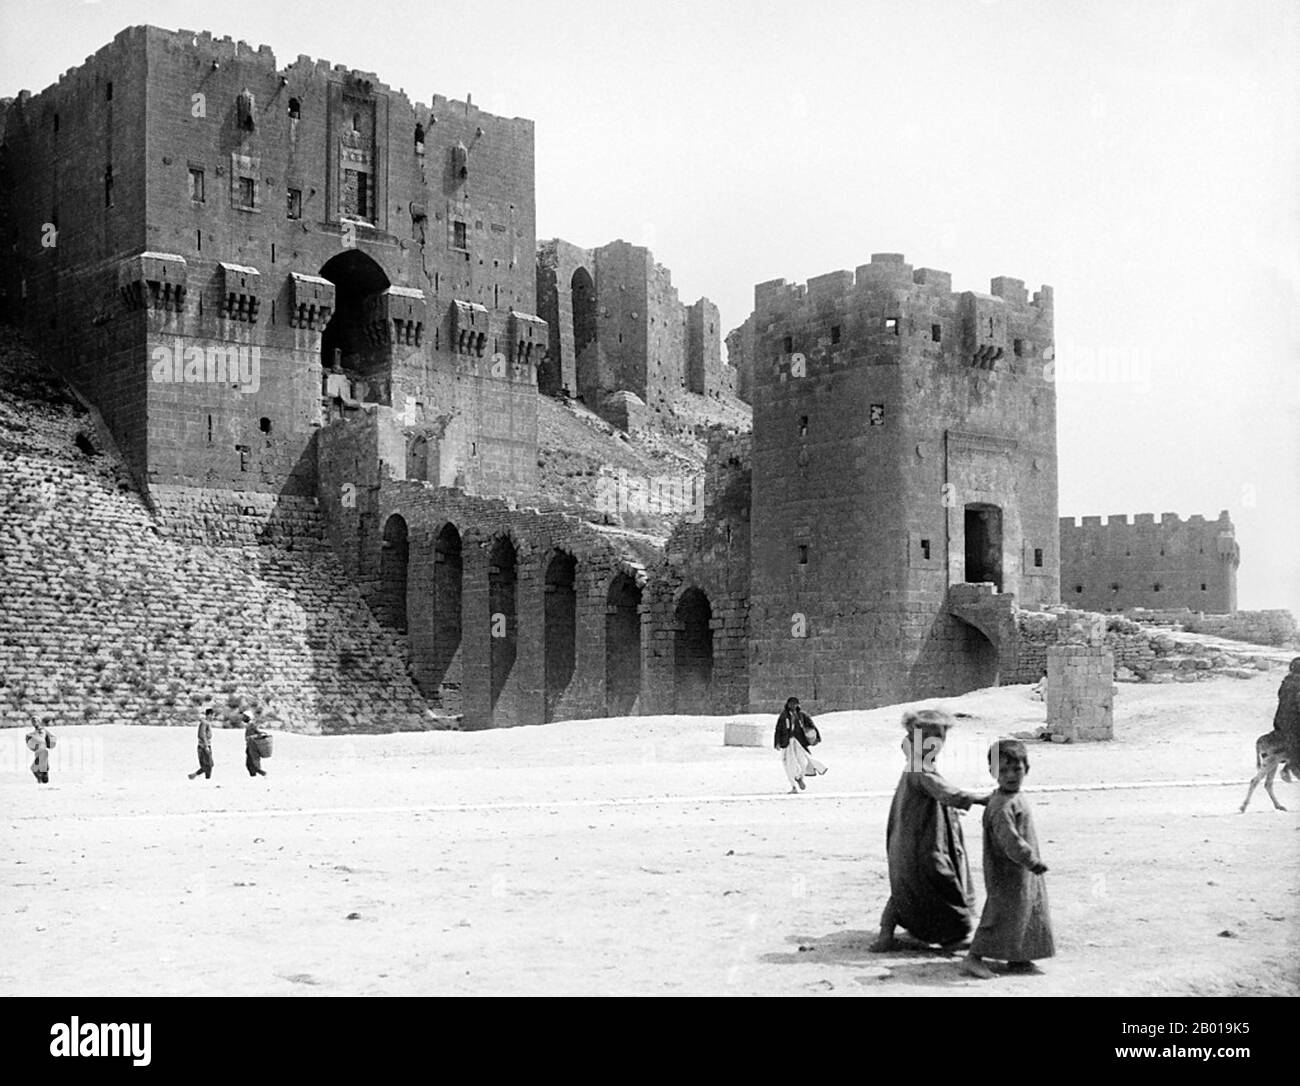 Syrien: Die Zitadelle von Aleppo (Haleb), c. 1900. Die Zitadelle von Aleppo ist ein großer mittelalterlicher befestigter Palast im Zentrum der Altstadt von Aleppo im Norden Syriens. Als eines der ältesten und größten Schlösser der Welt stammt die Nutzung des Zitadellenhügels mindestens aus der Mitte des 3.. Jahrtausends v. Chr. Später von vielen Zivilisationen wie den Griechen, Byzantinern, Ayyubids und Mamluks besetzt, wird angenommen, dass der Großteil der Konstruktion, wie sie heute steht, aus der Ayyubid-Zeit stammt. Stockfoto